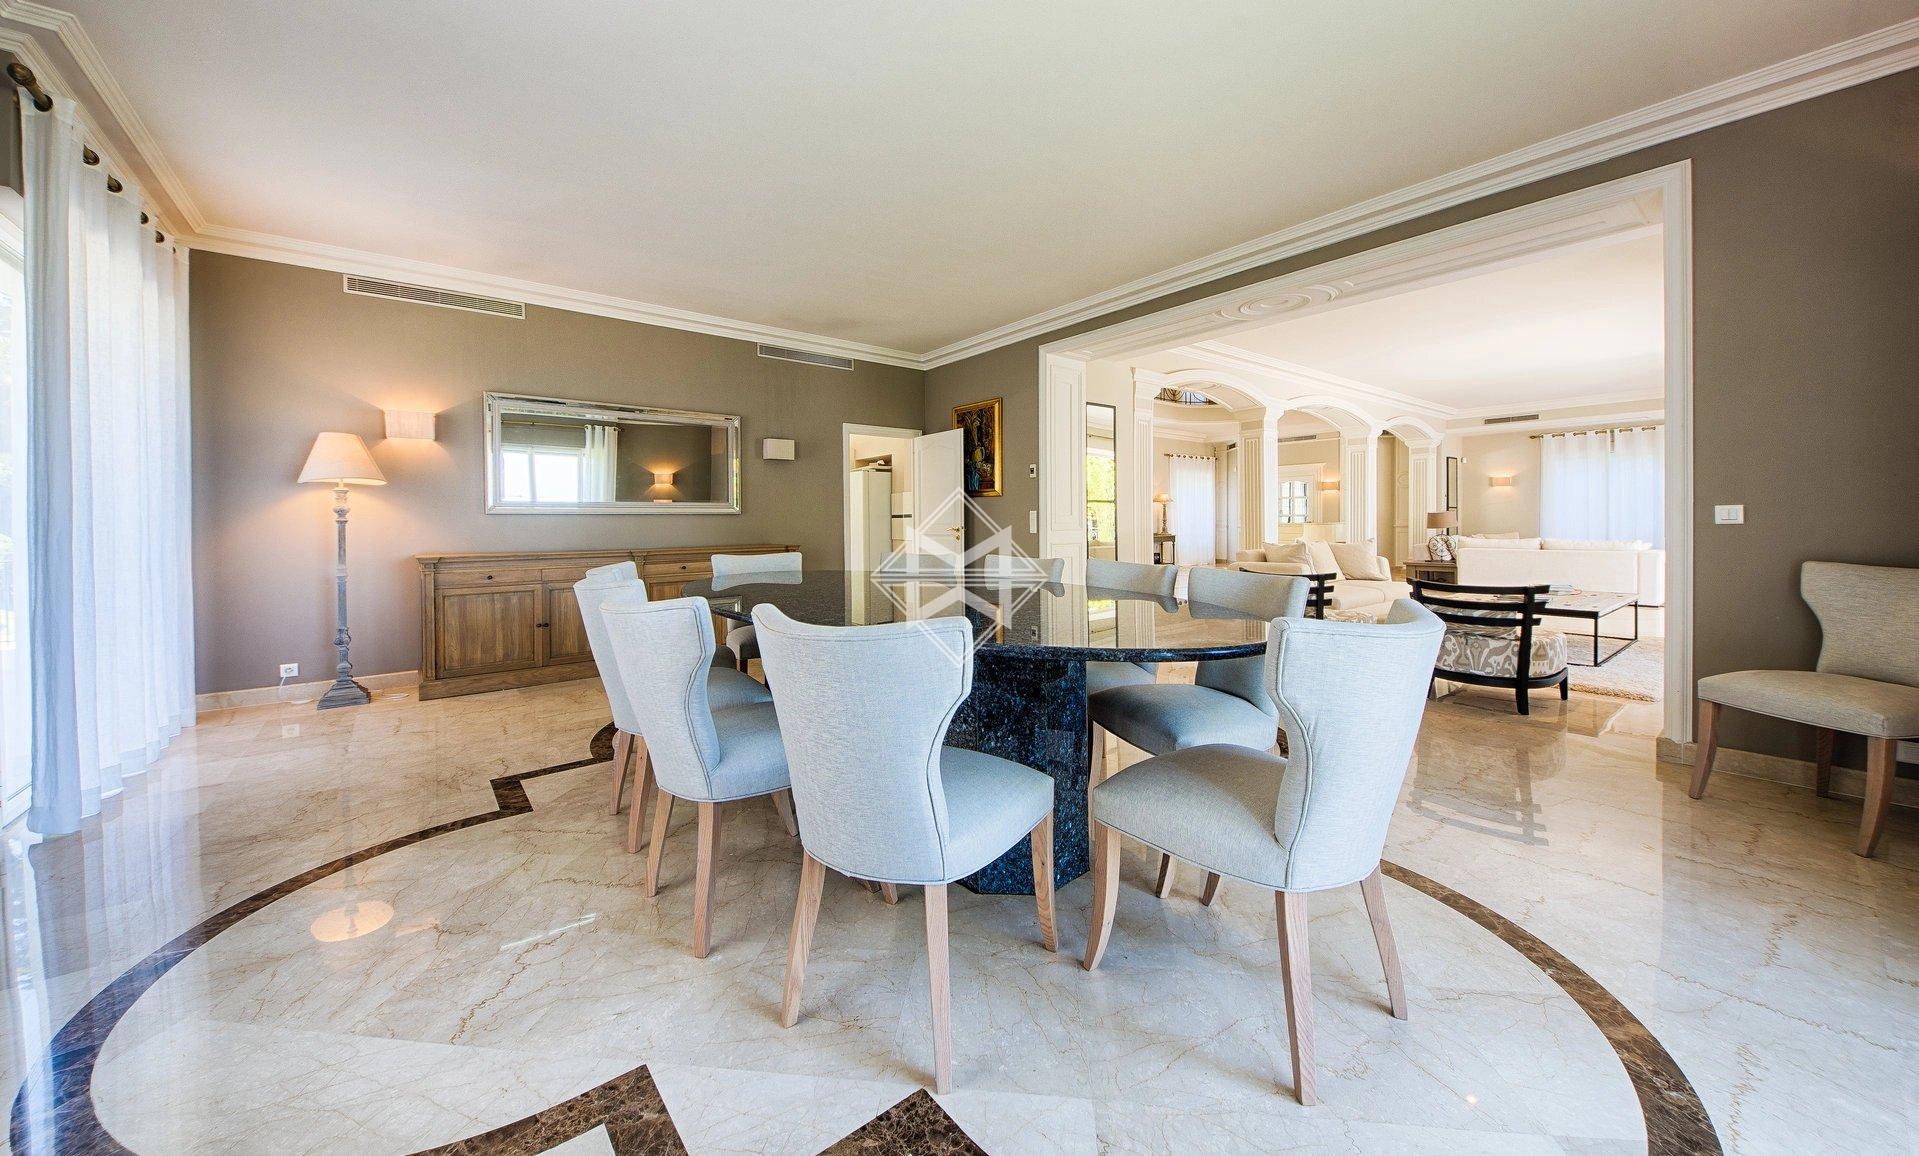 Sale Villa Cap d'Antibes - 9 Bedrooms - Sea view - Luxury . Ref 7034